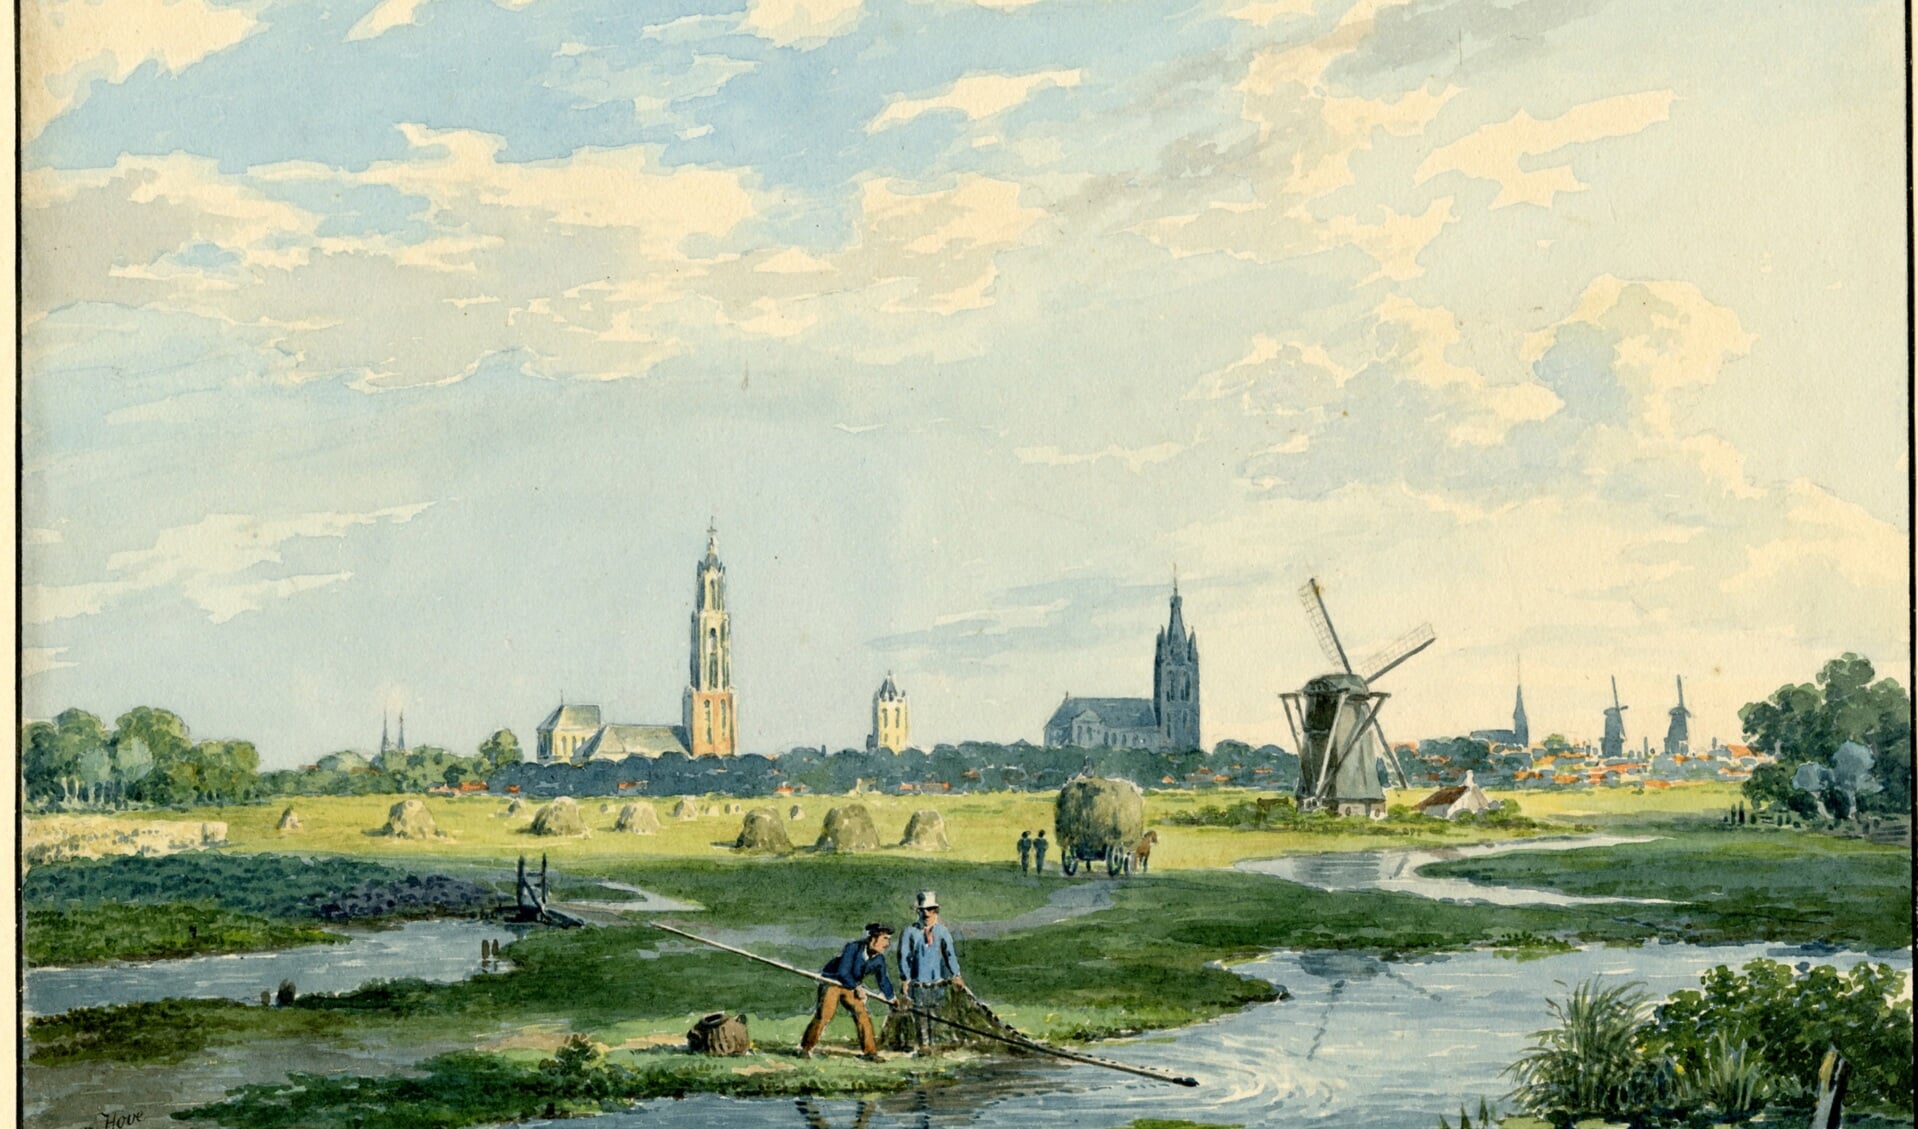 Delft gezien vanuit het noorden, circa 1830. (illustratie: Gemeentearchief Delft)